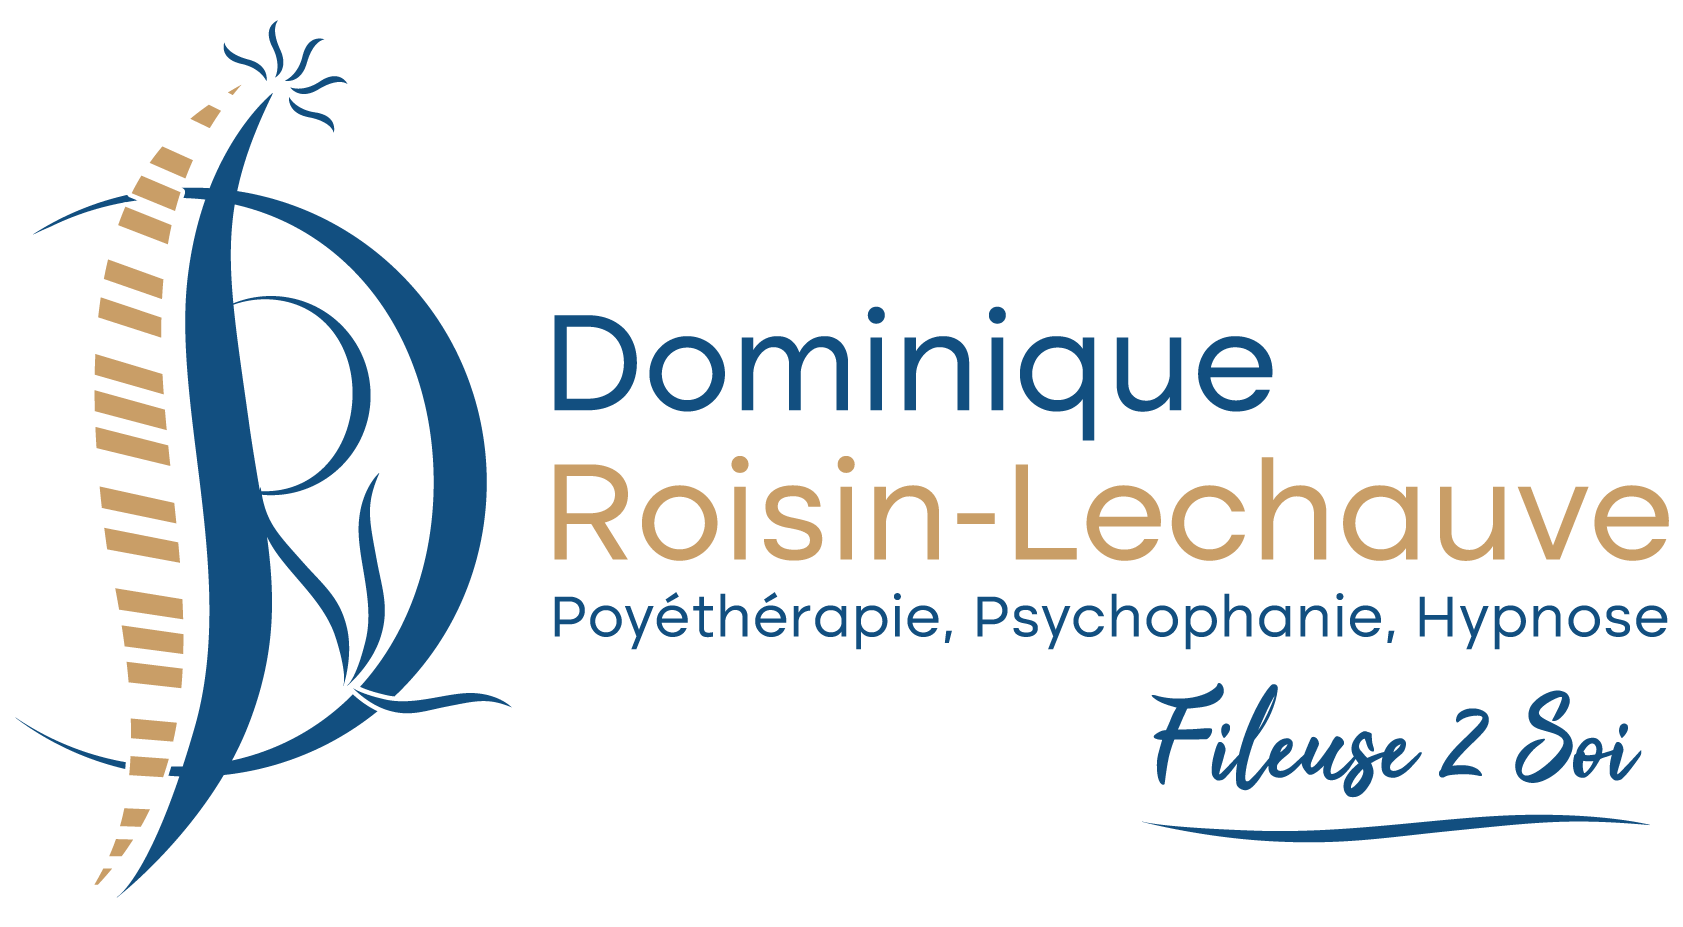 Dominique Roisin Le Chauve